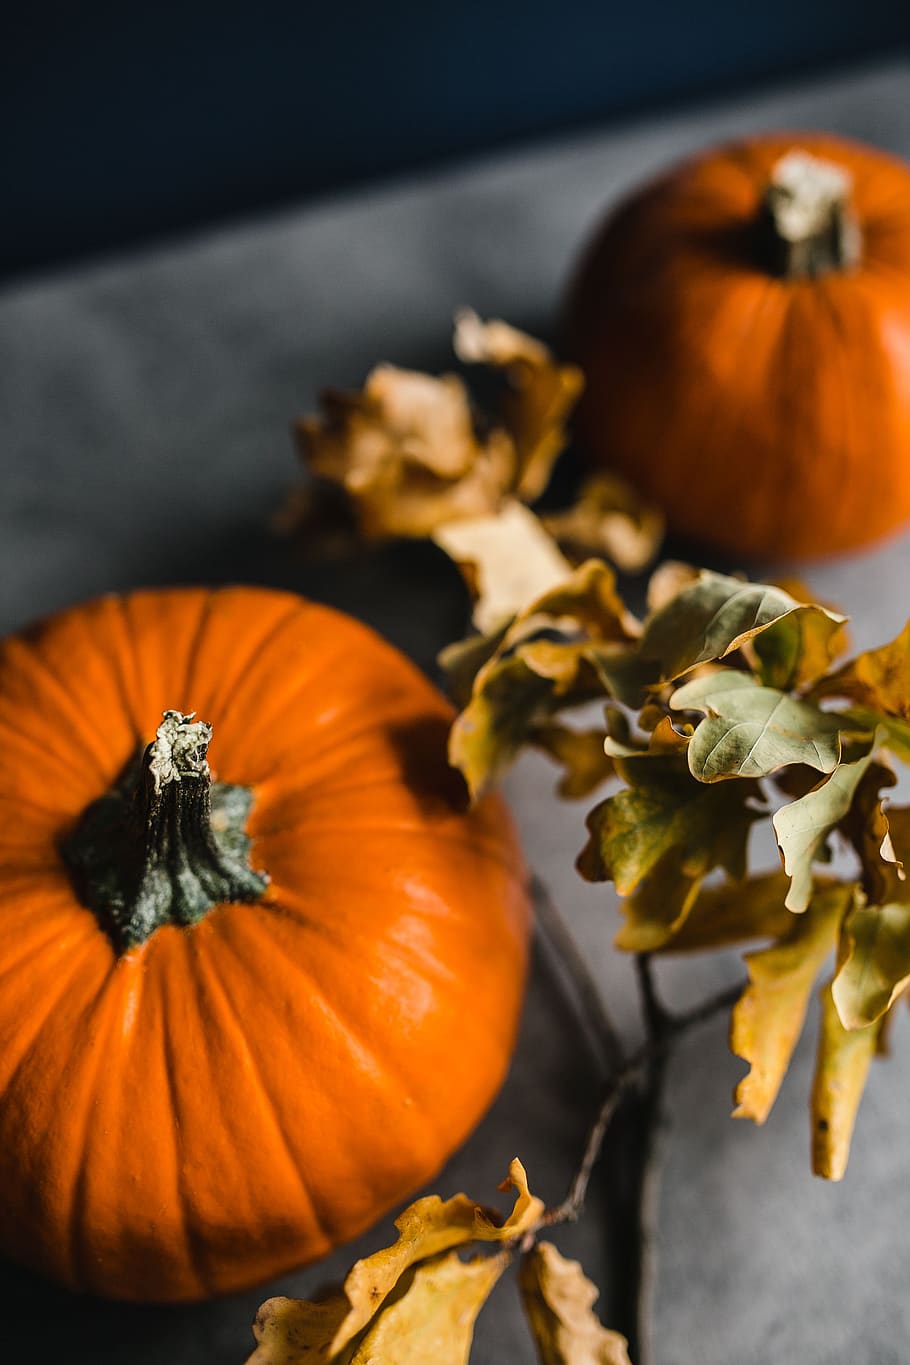 otoño, halloween, acción de gracias, calabaza, comida y bebida, comida, frescura, color naranja, vegetal, alimentación saludable